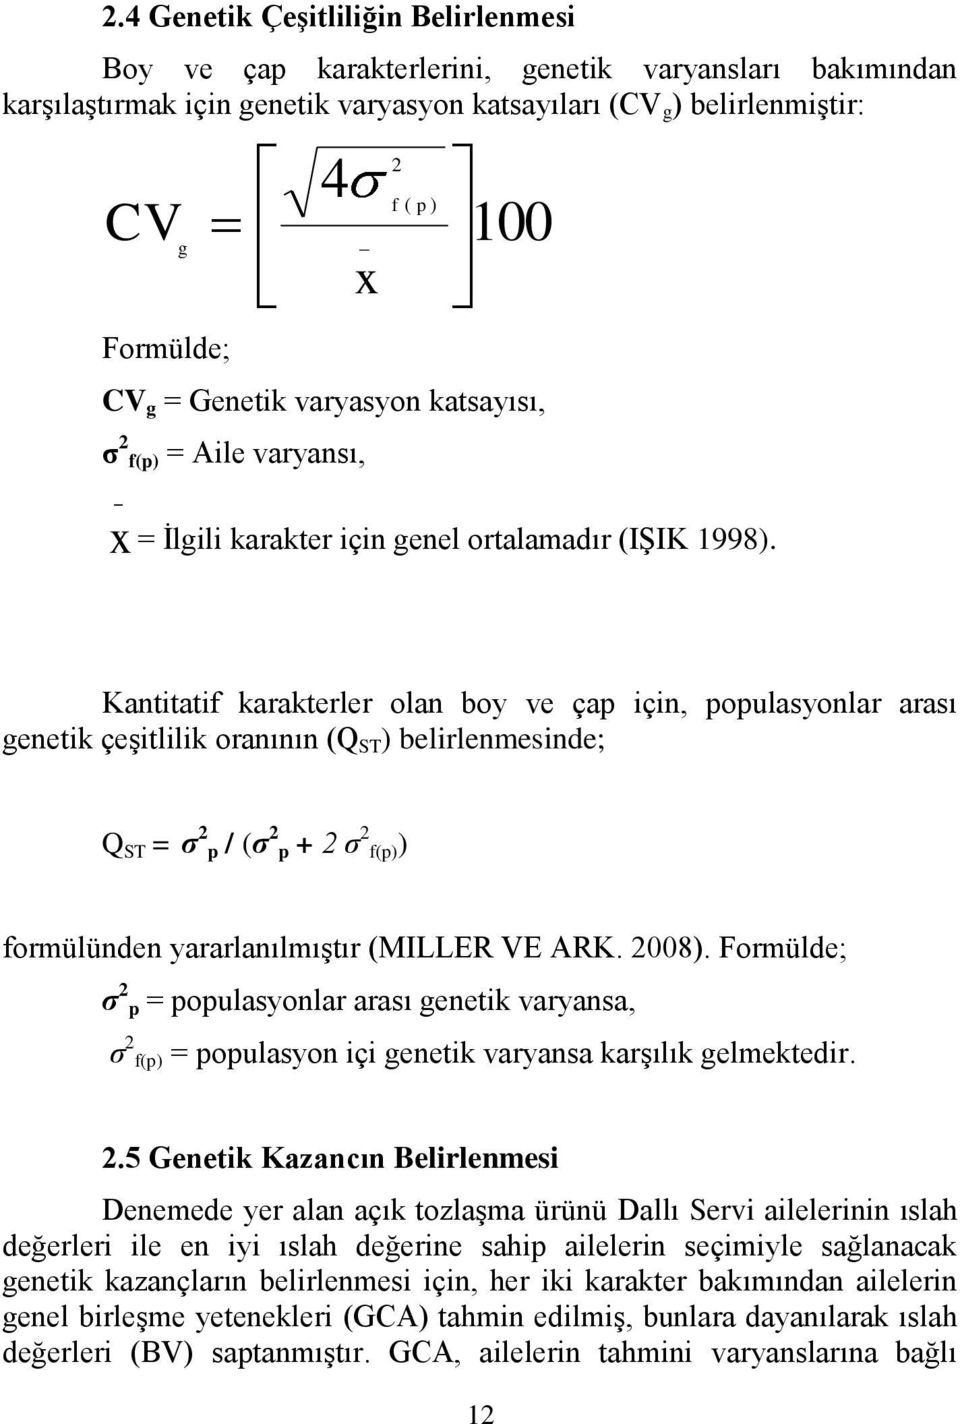 Kantitatif karakterler olan boy ve çap için, populasyonlar arası genetik çeģitlilik oranının (Q ST ) belirlenmesinde; Q ST = σ 2 p / (σ 2 p + 2 σ 2 f(p)) formülünden yararlanılmıģtır (MILLER VE ARK.